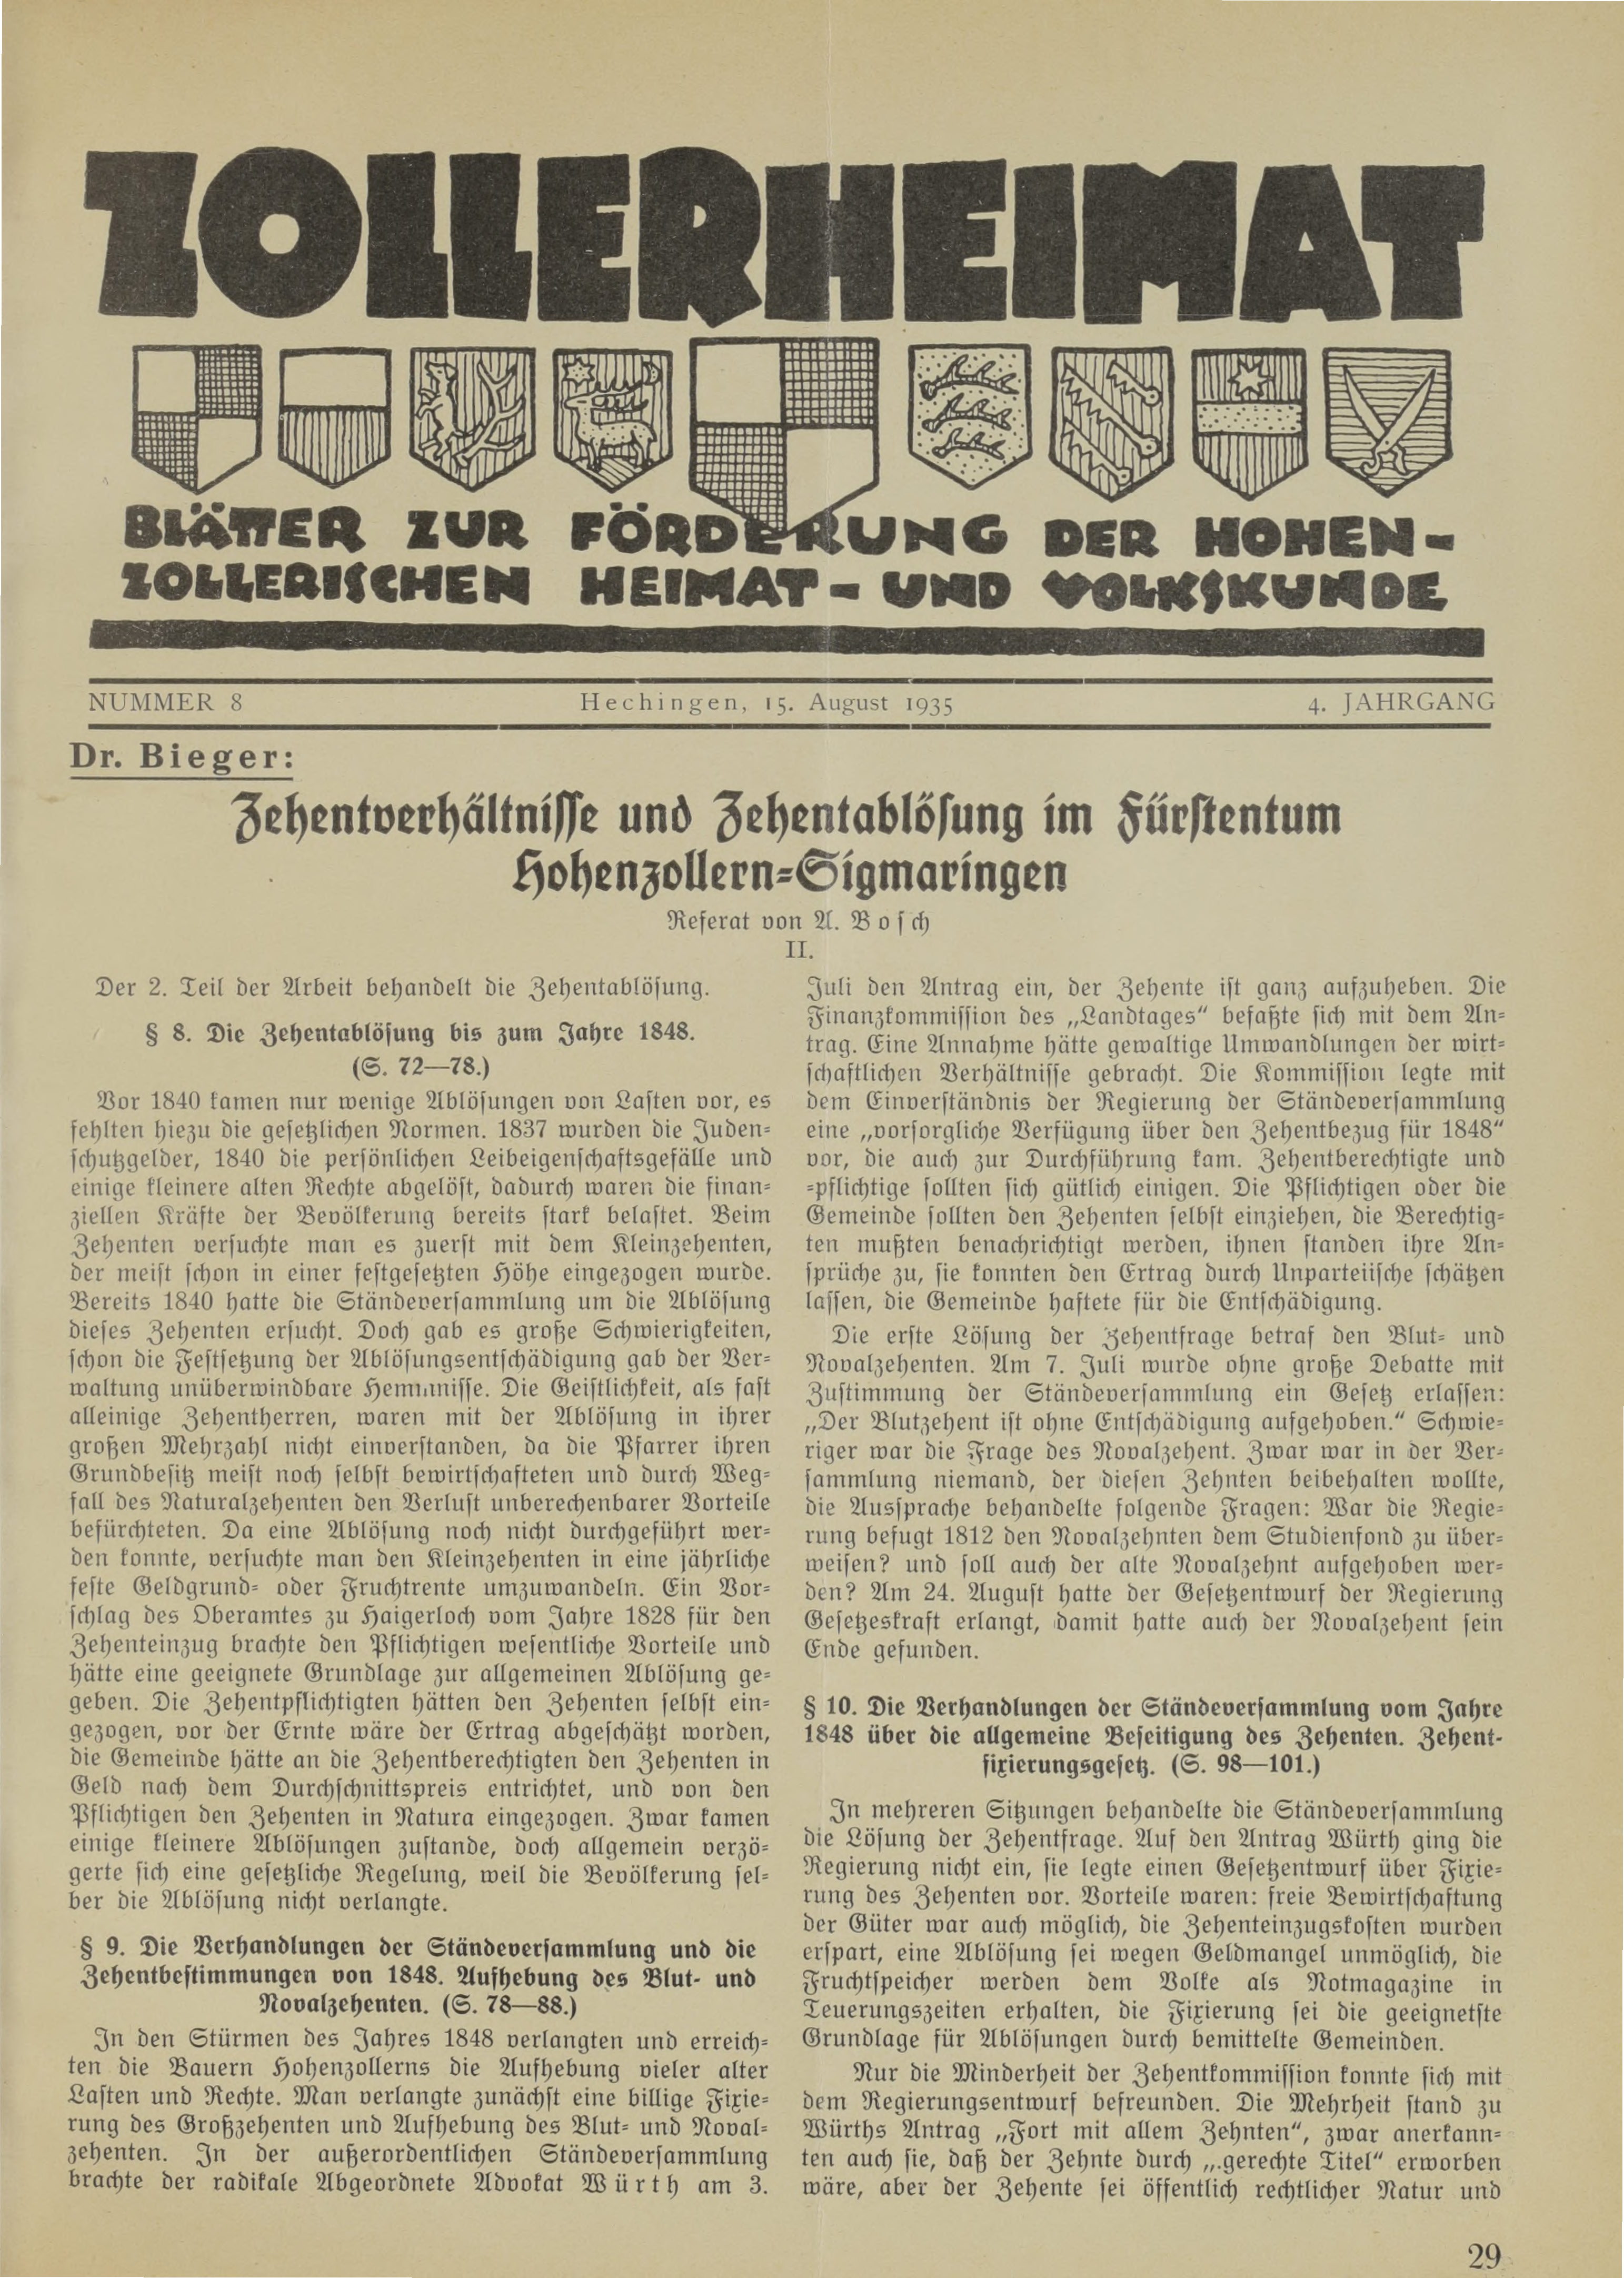                     Ansehen Bd. 4 Nr. 8 (1935): Zollerheimat
                